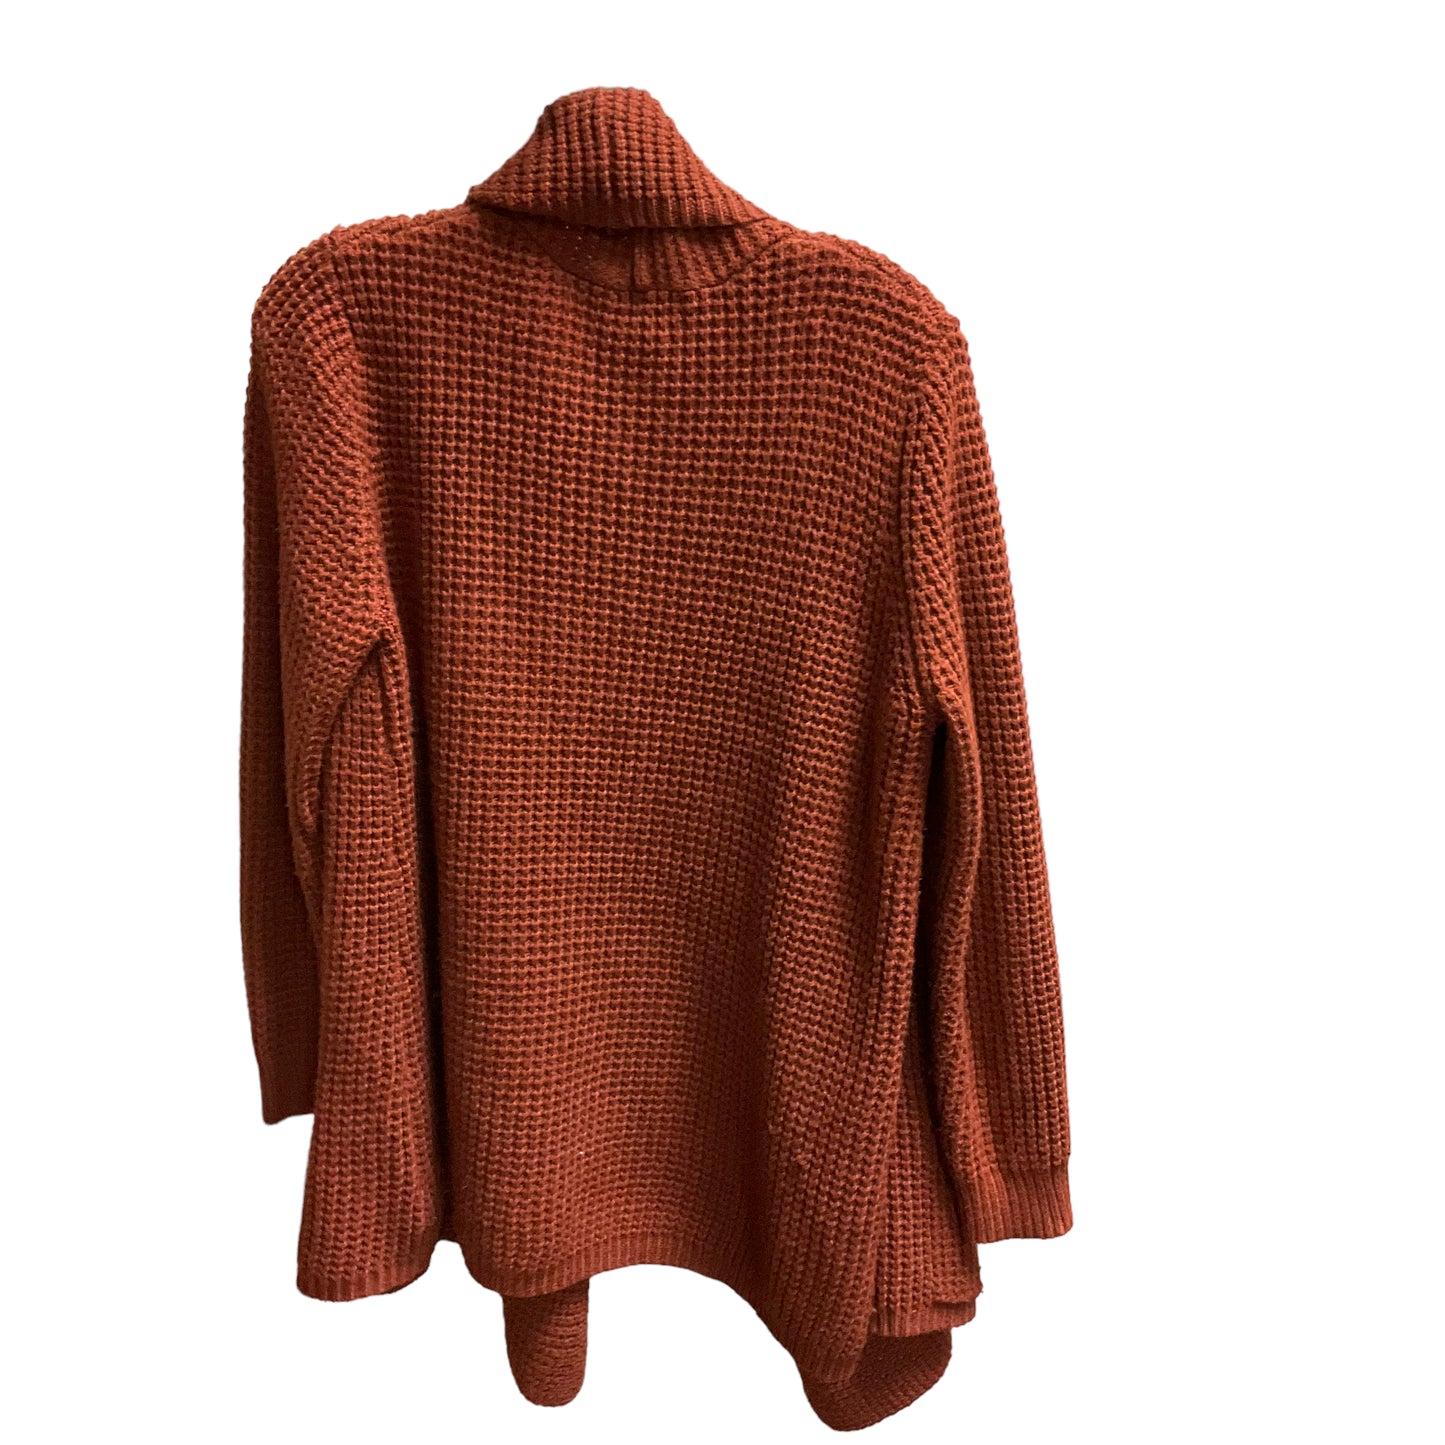 Sweater Cardigan By Merona  Size: Xxl